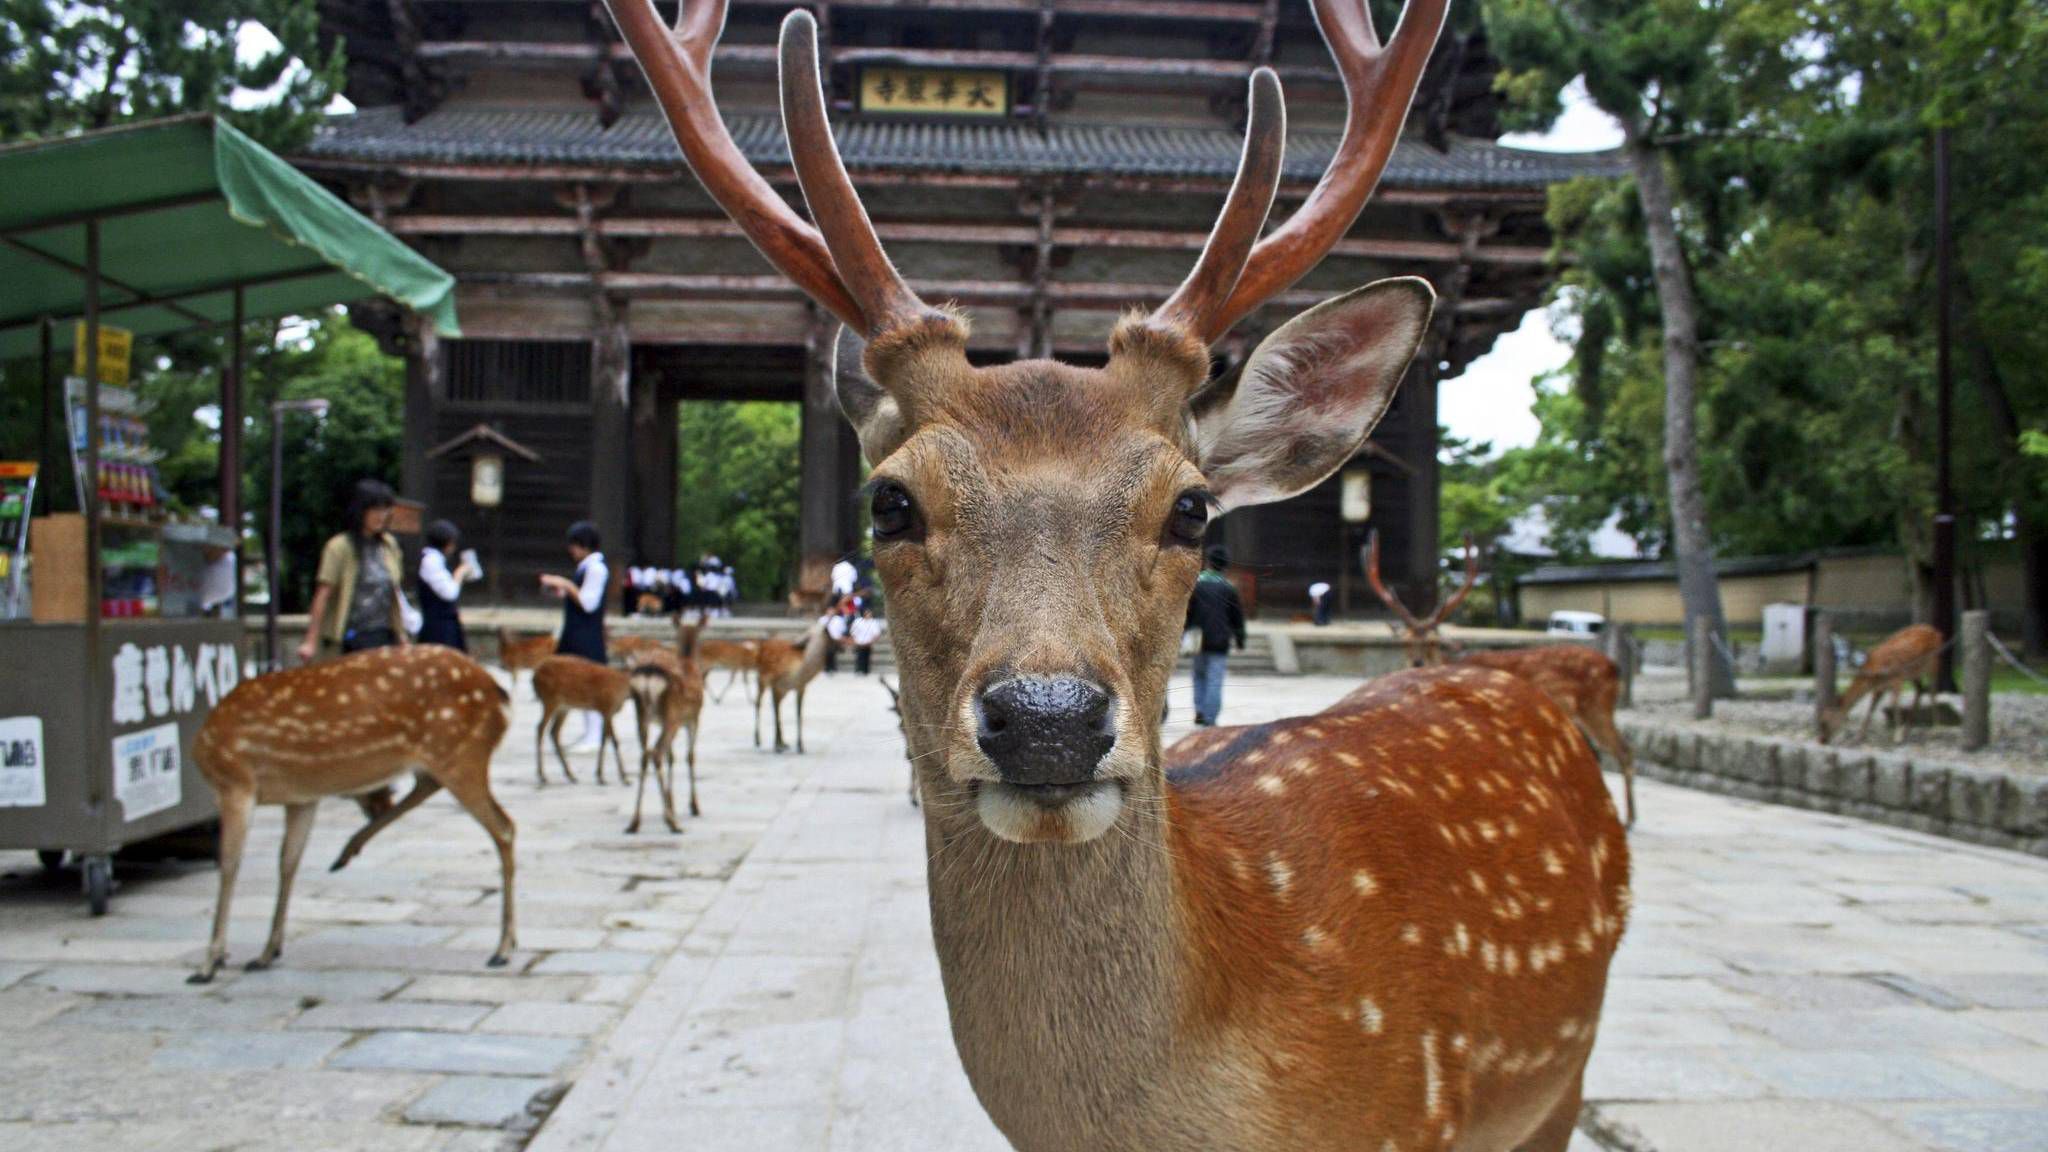 Mesebeli helyek, amiket látnod kell - Nara